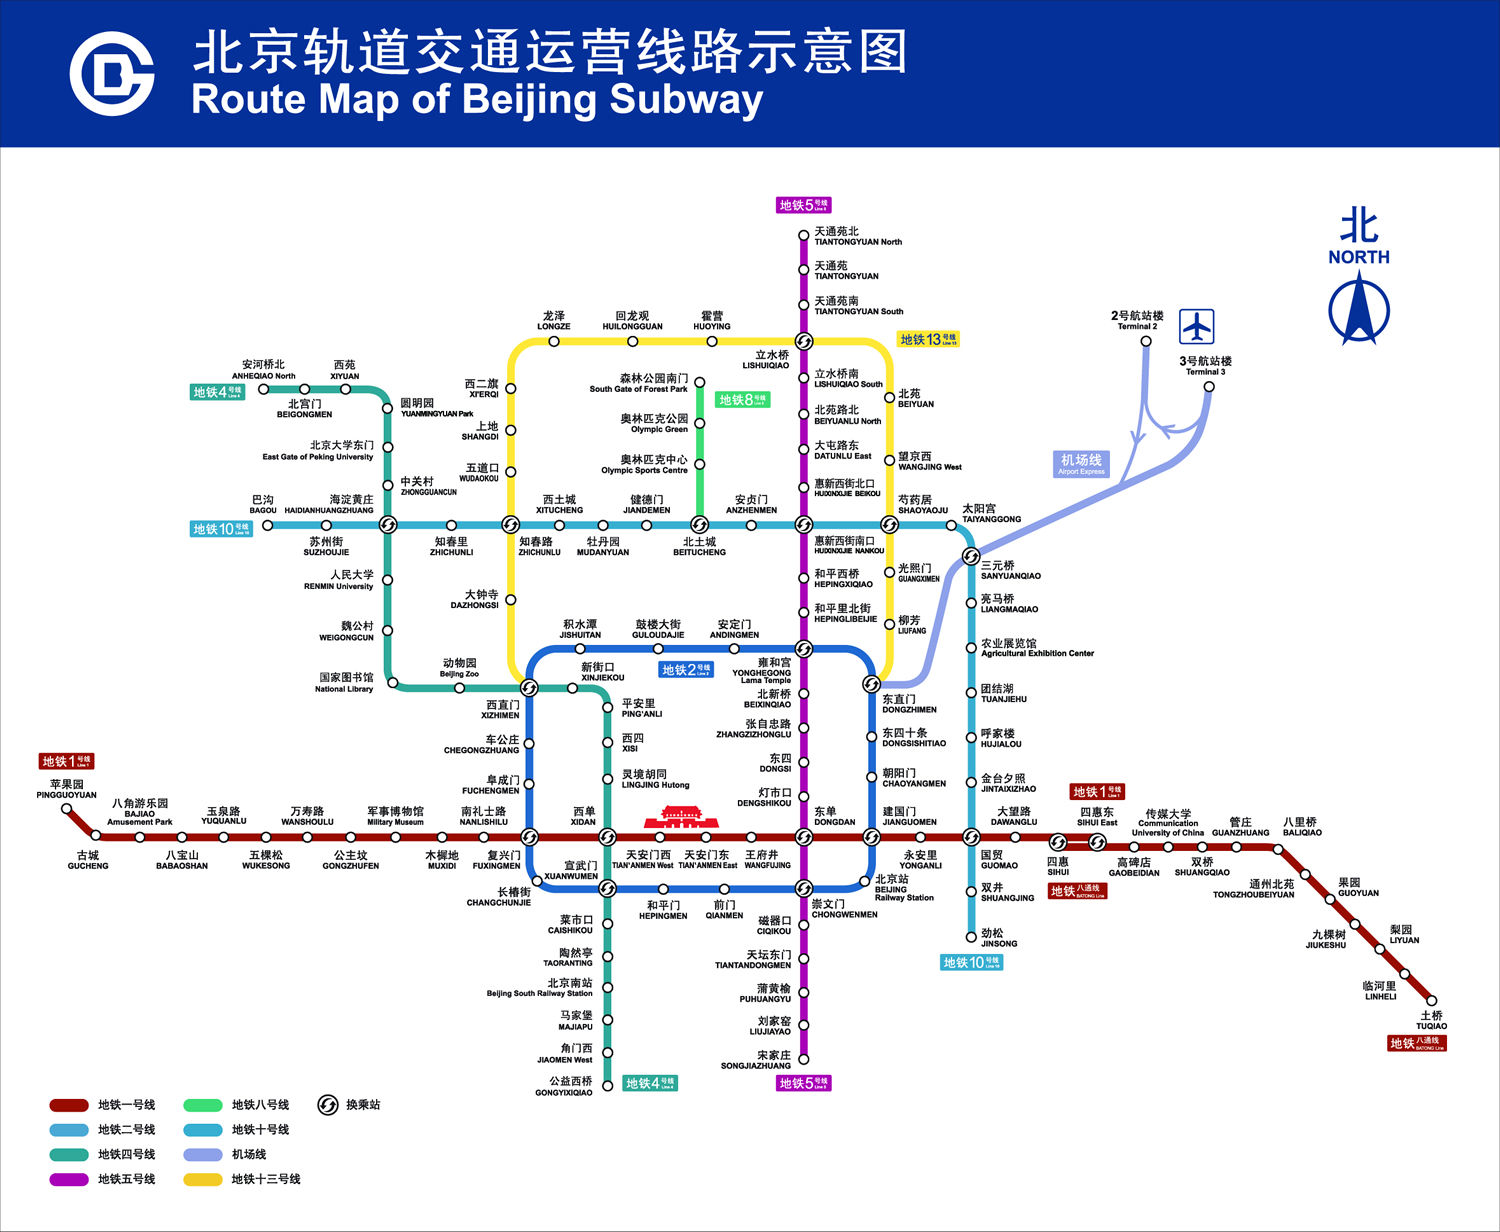 北京轨道交通运营线路示意图资料图片